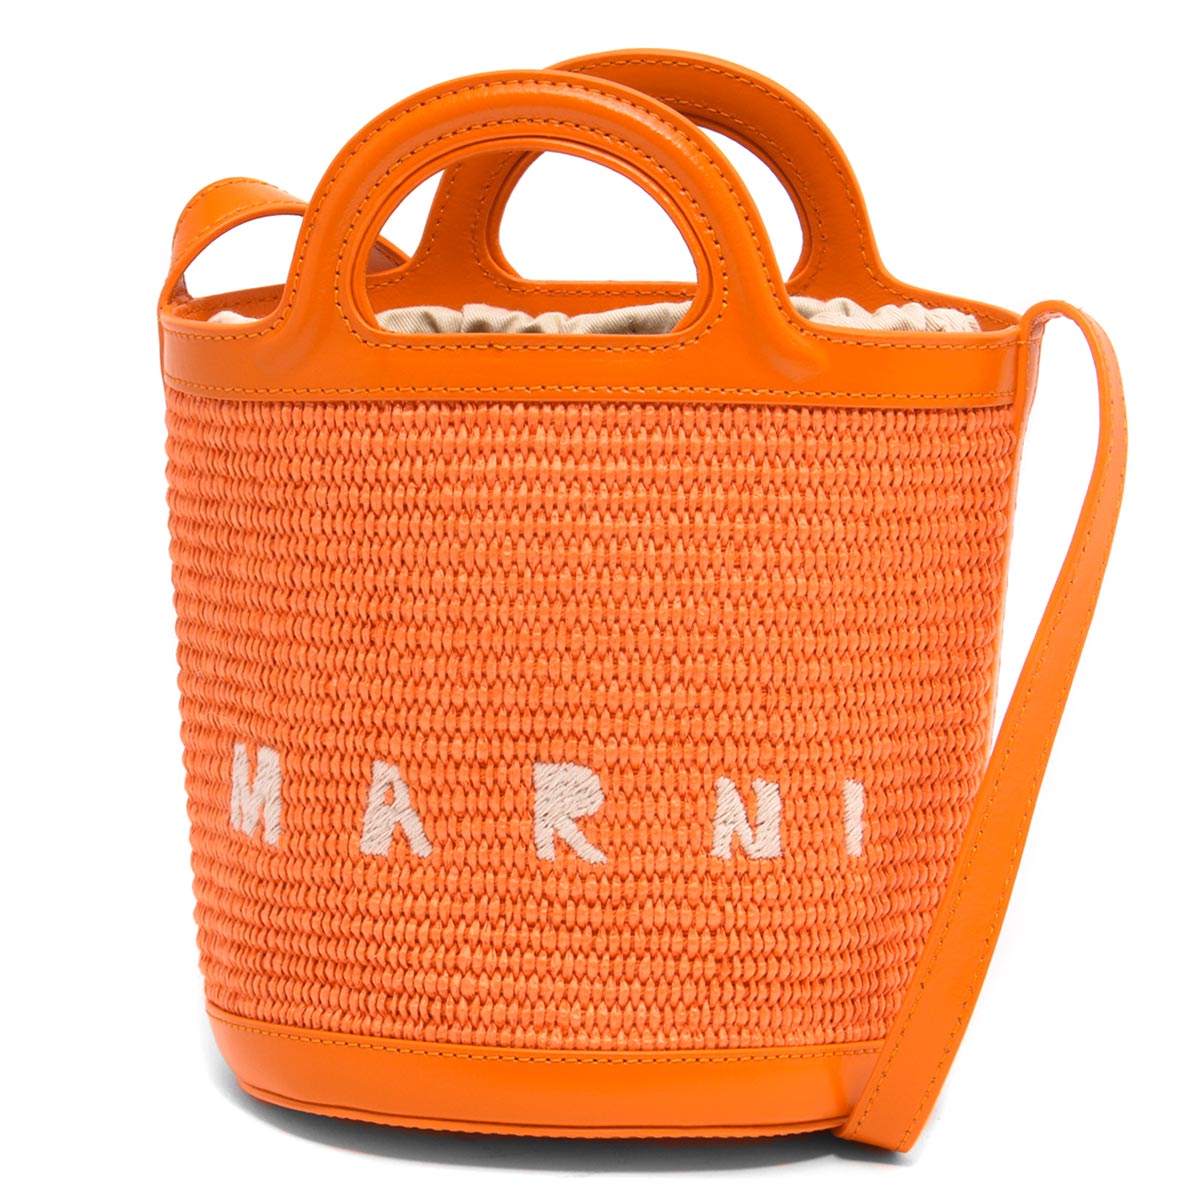 マルニ 定番型レザーチェックリュック バッグ Marni